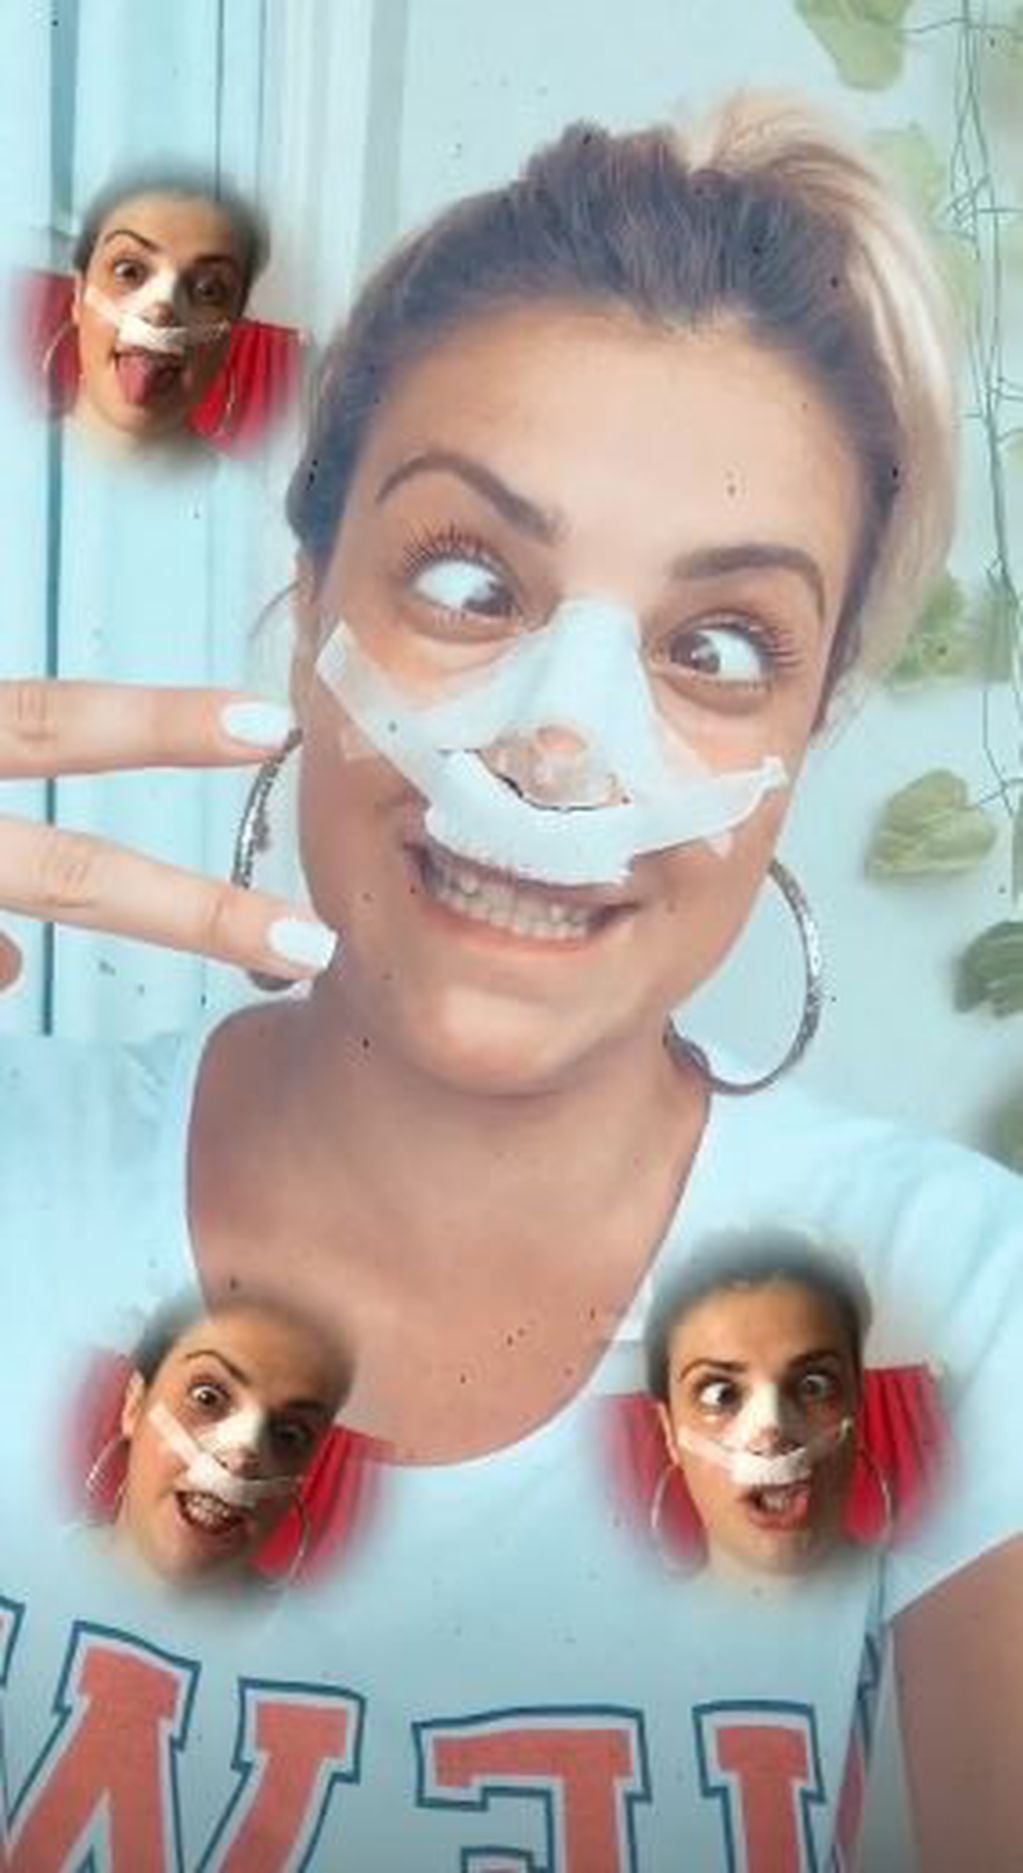 Bianca Iovenitti se operó la nariz y mostró cómo quedó su cara en Instagram (Foto: Instagram/ @bianiovenitti)